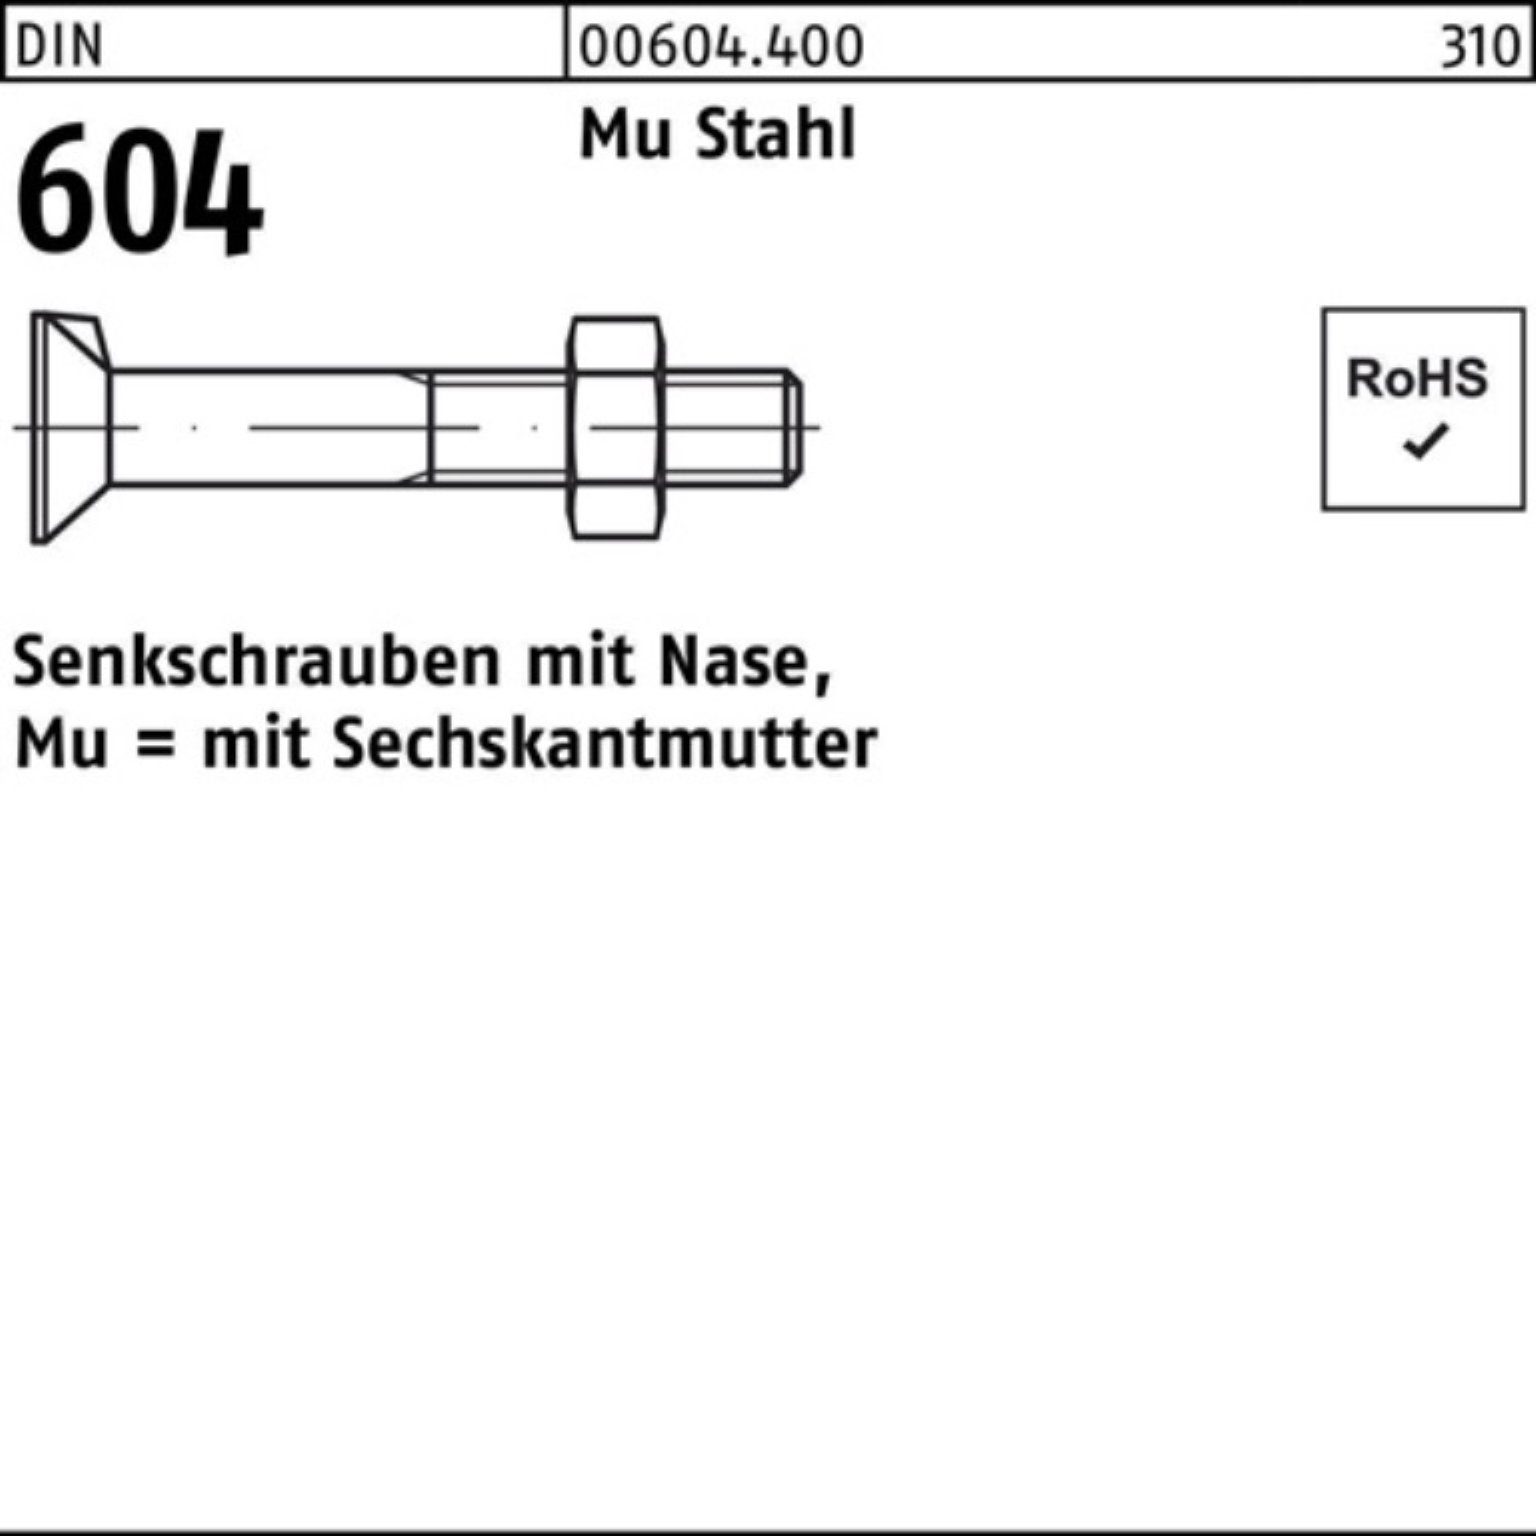 604 Stahl Pack Mu M24x Reyher 100er 4.6 2 Nase/6-ktmutter 65 Senkschraube DIN Senkschraube